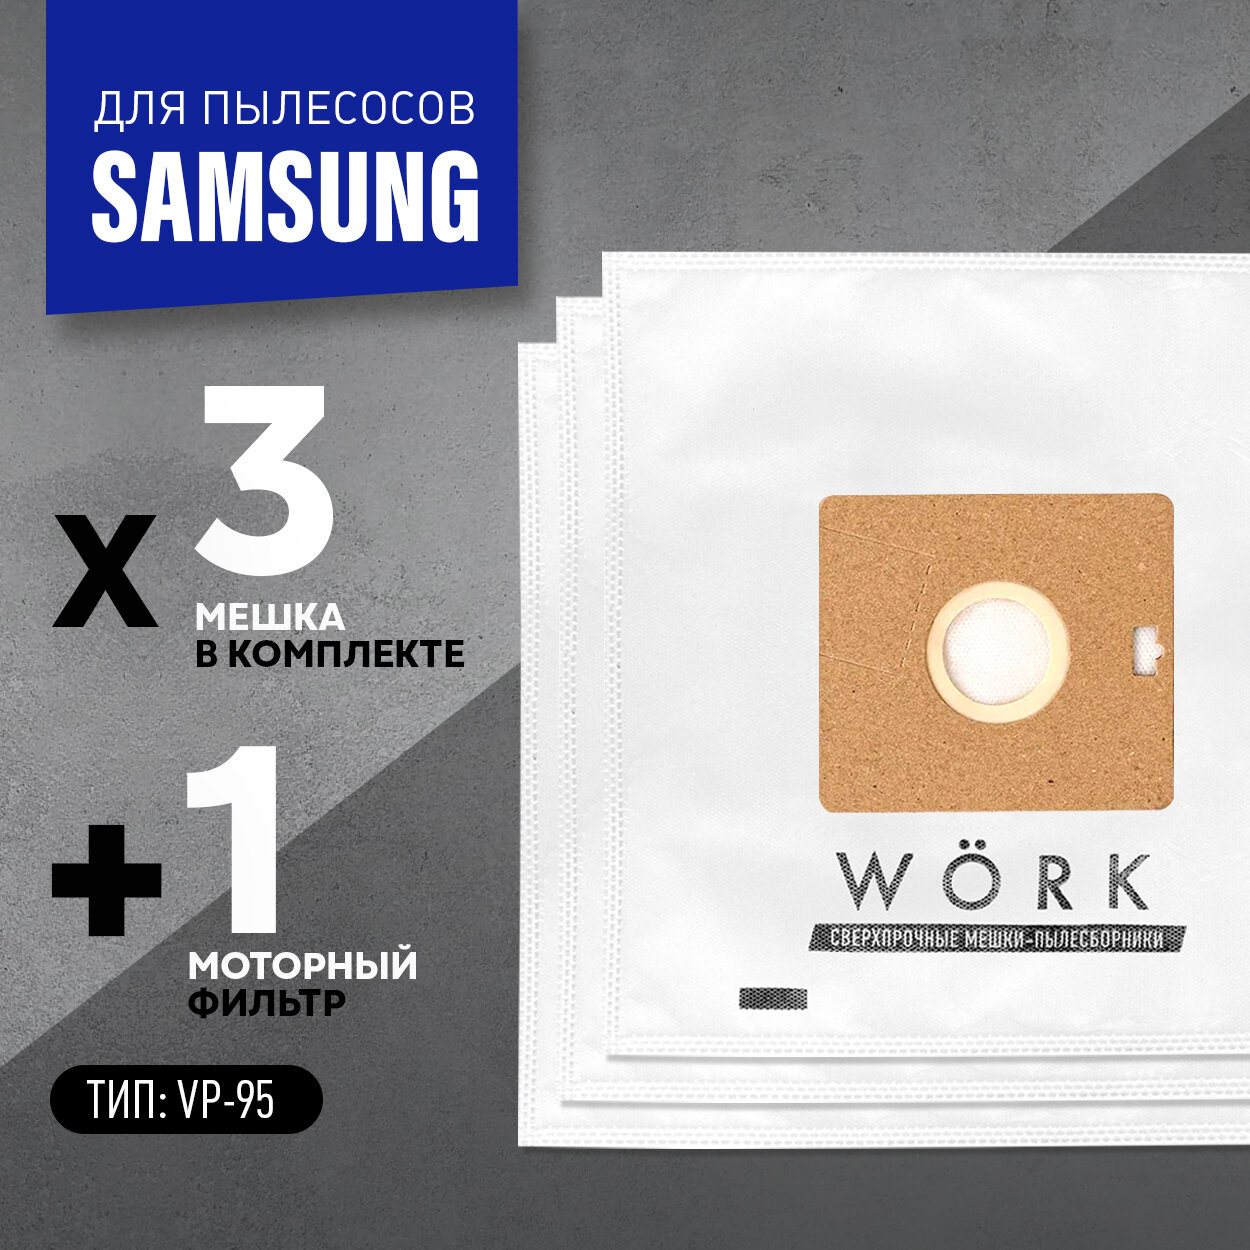 Мешки для пылесосов Самсунг, Samsung, тип VP 95B, 3шт. + фильтр